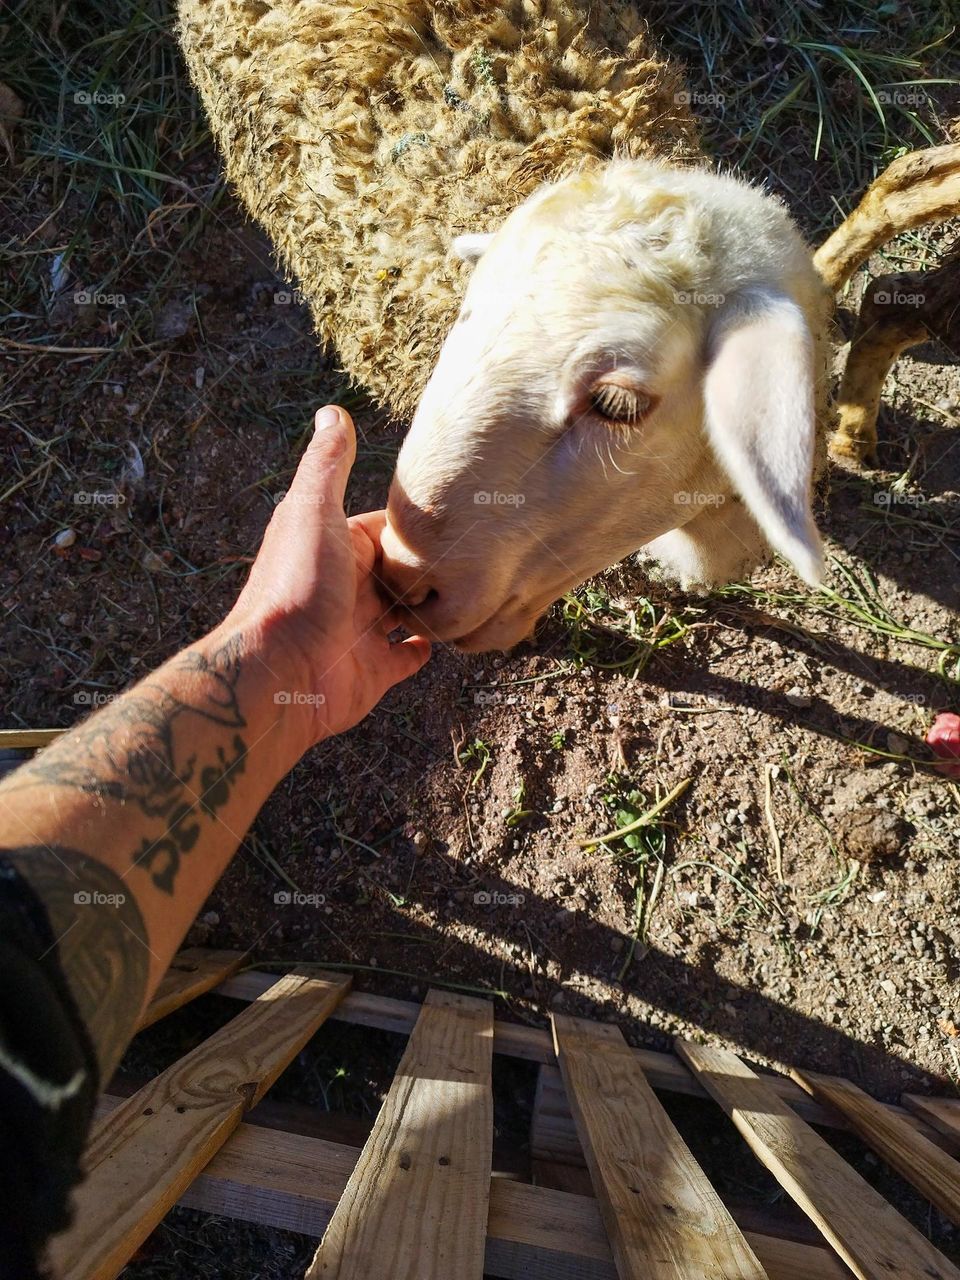 petting a lamb